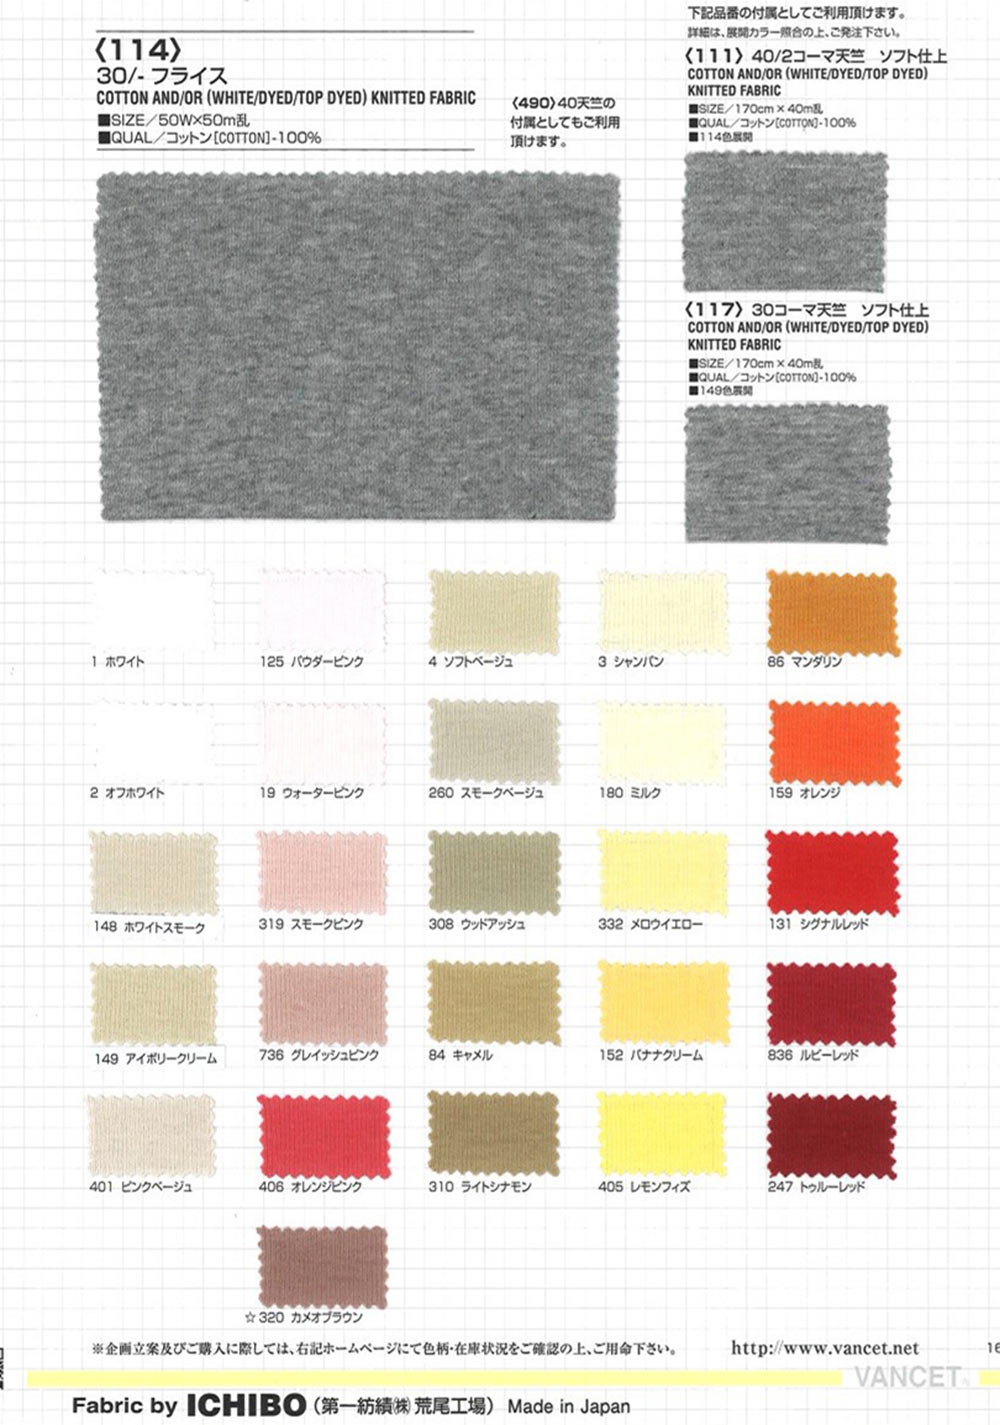 114 30 / Costilla Circular[Fabrica Textil] VANCET